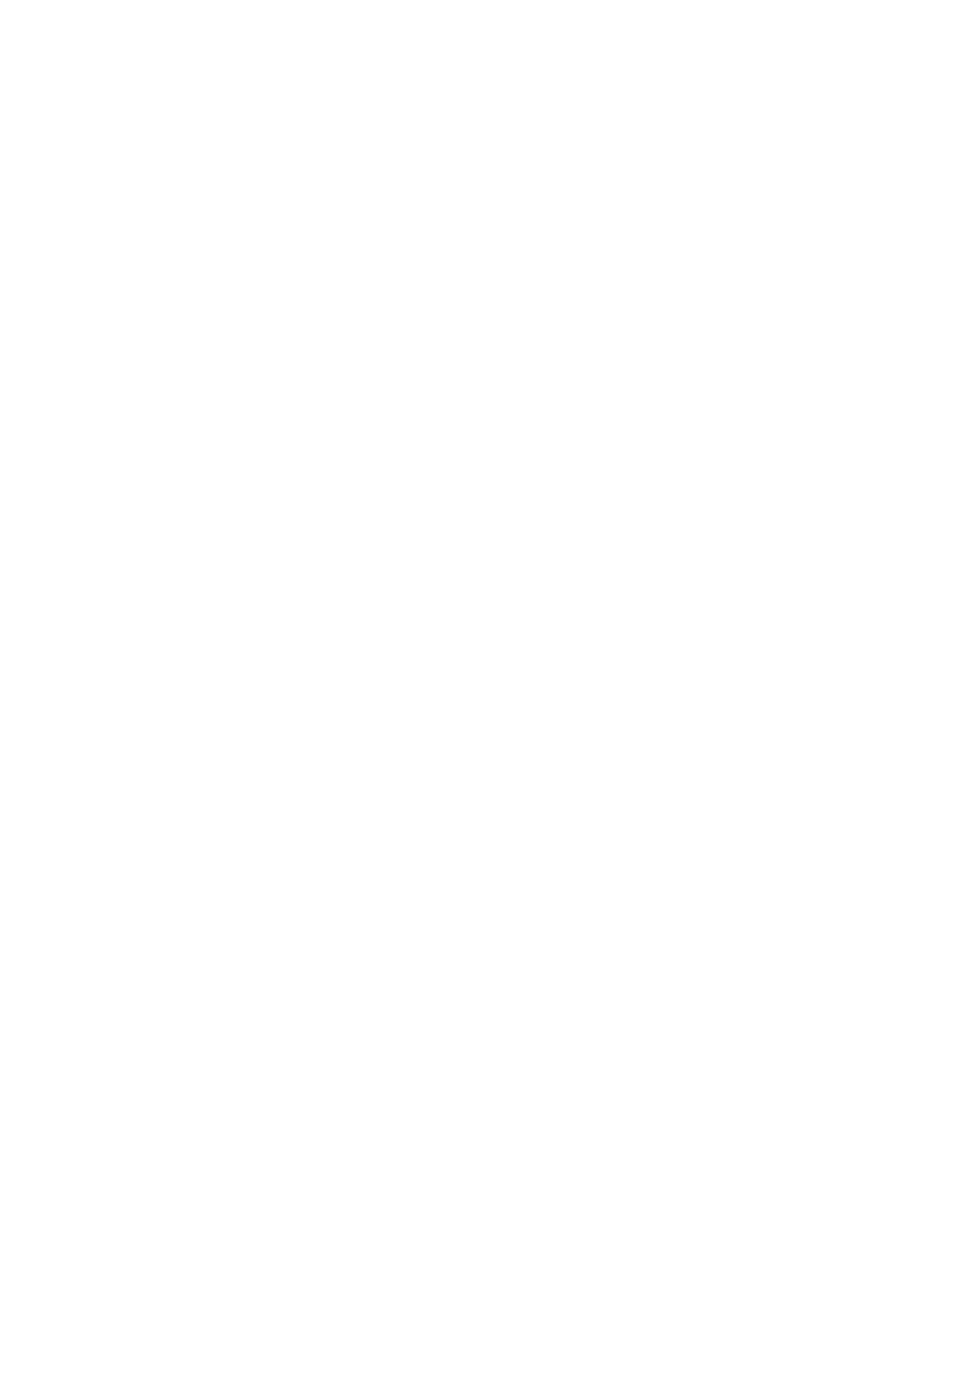 한국의 방송 프로그램 교류 현황 58 [ 그림 8] 대만 내 한국 드라마 방영 현황 60 [ 그림 9] 미디어 지출 추이 (2002 년~2006 년)